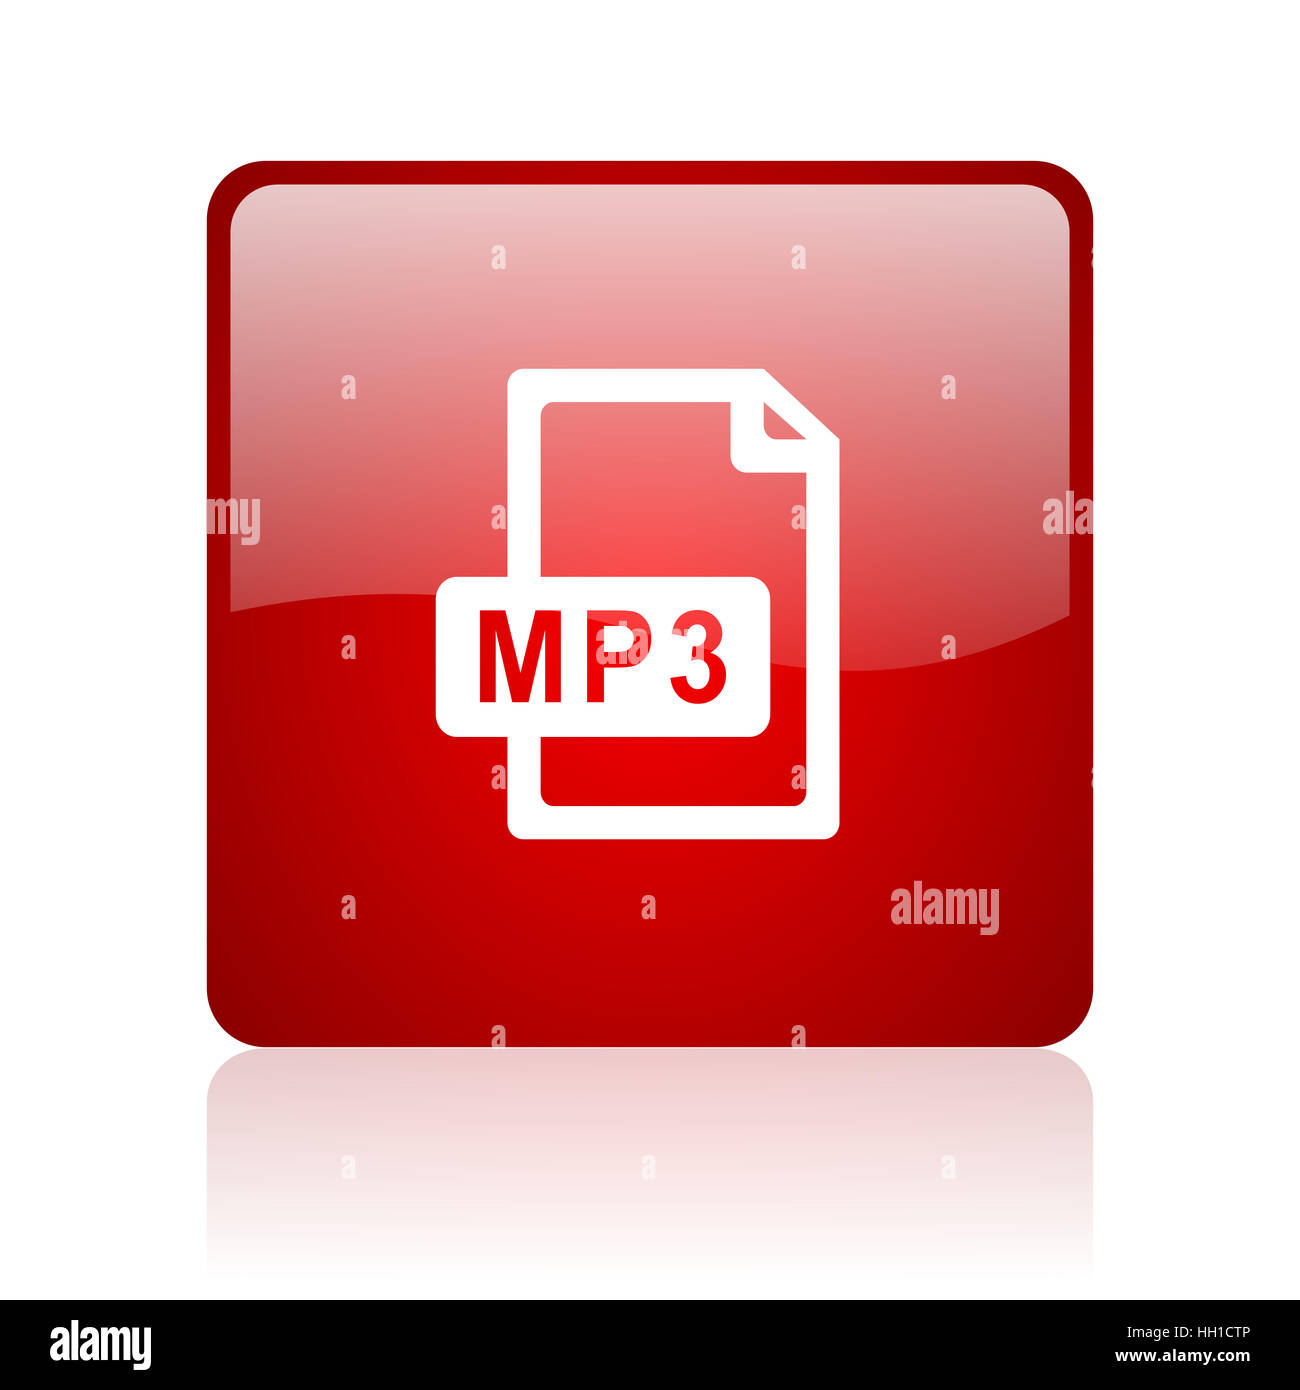 Audio mp3 file icon sign Banque d'images détourées - Alamy